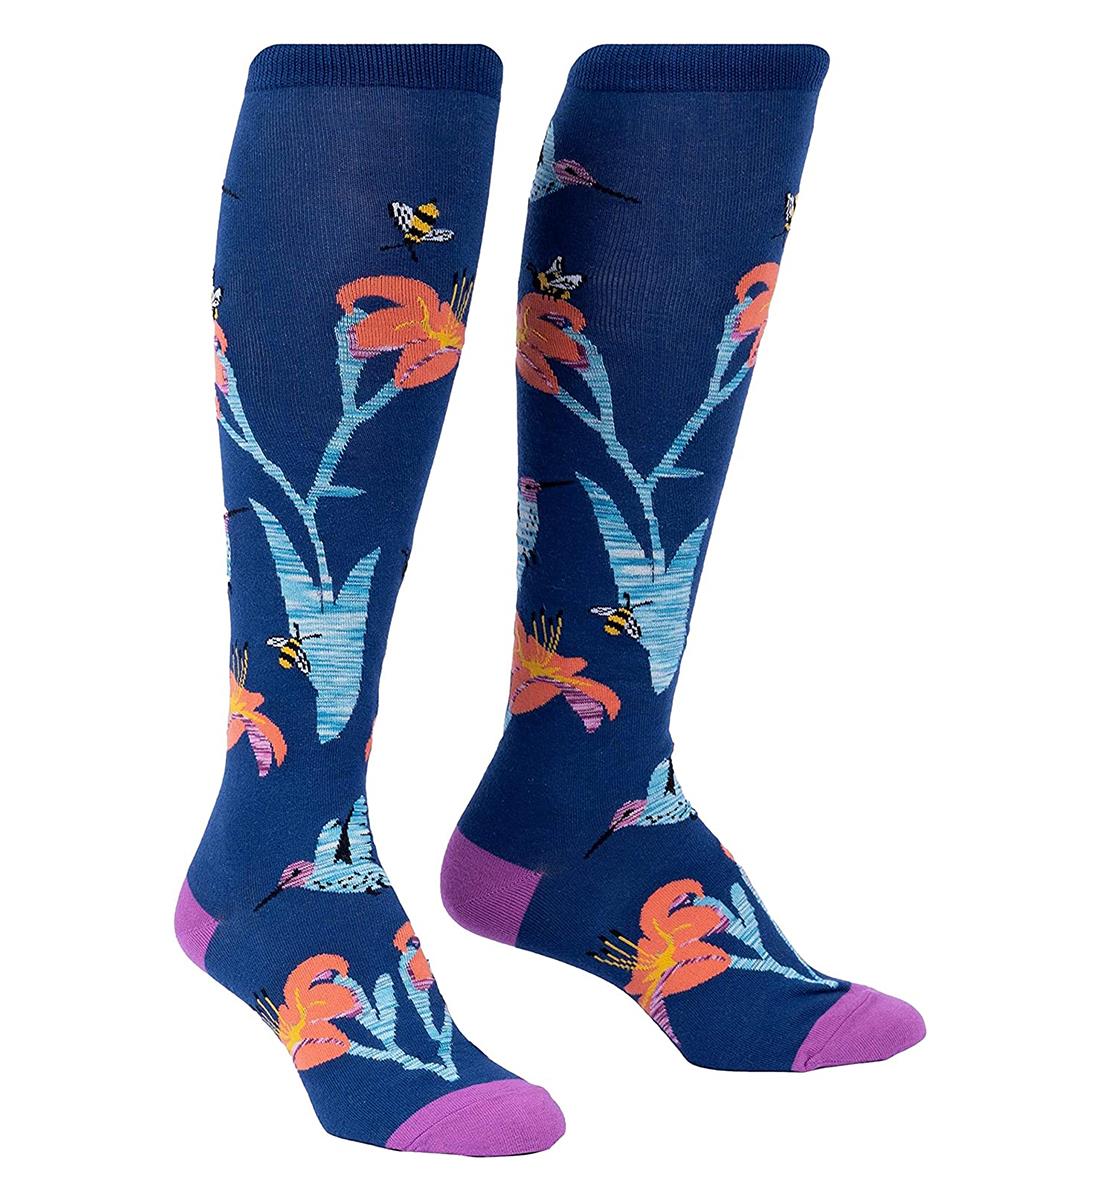 SOCK it to me Unisex Knee High Socks (F0602),Hmmmmmingbird - Hmmmmmingbird,One Size